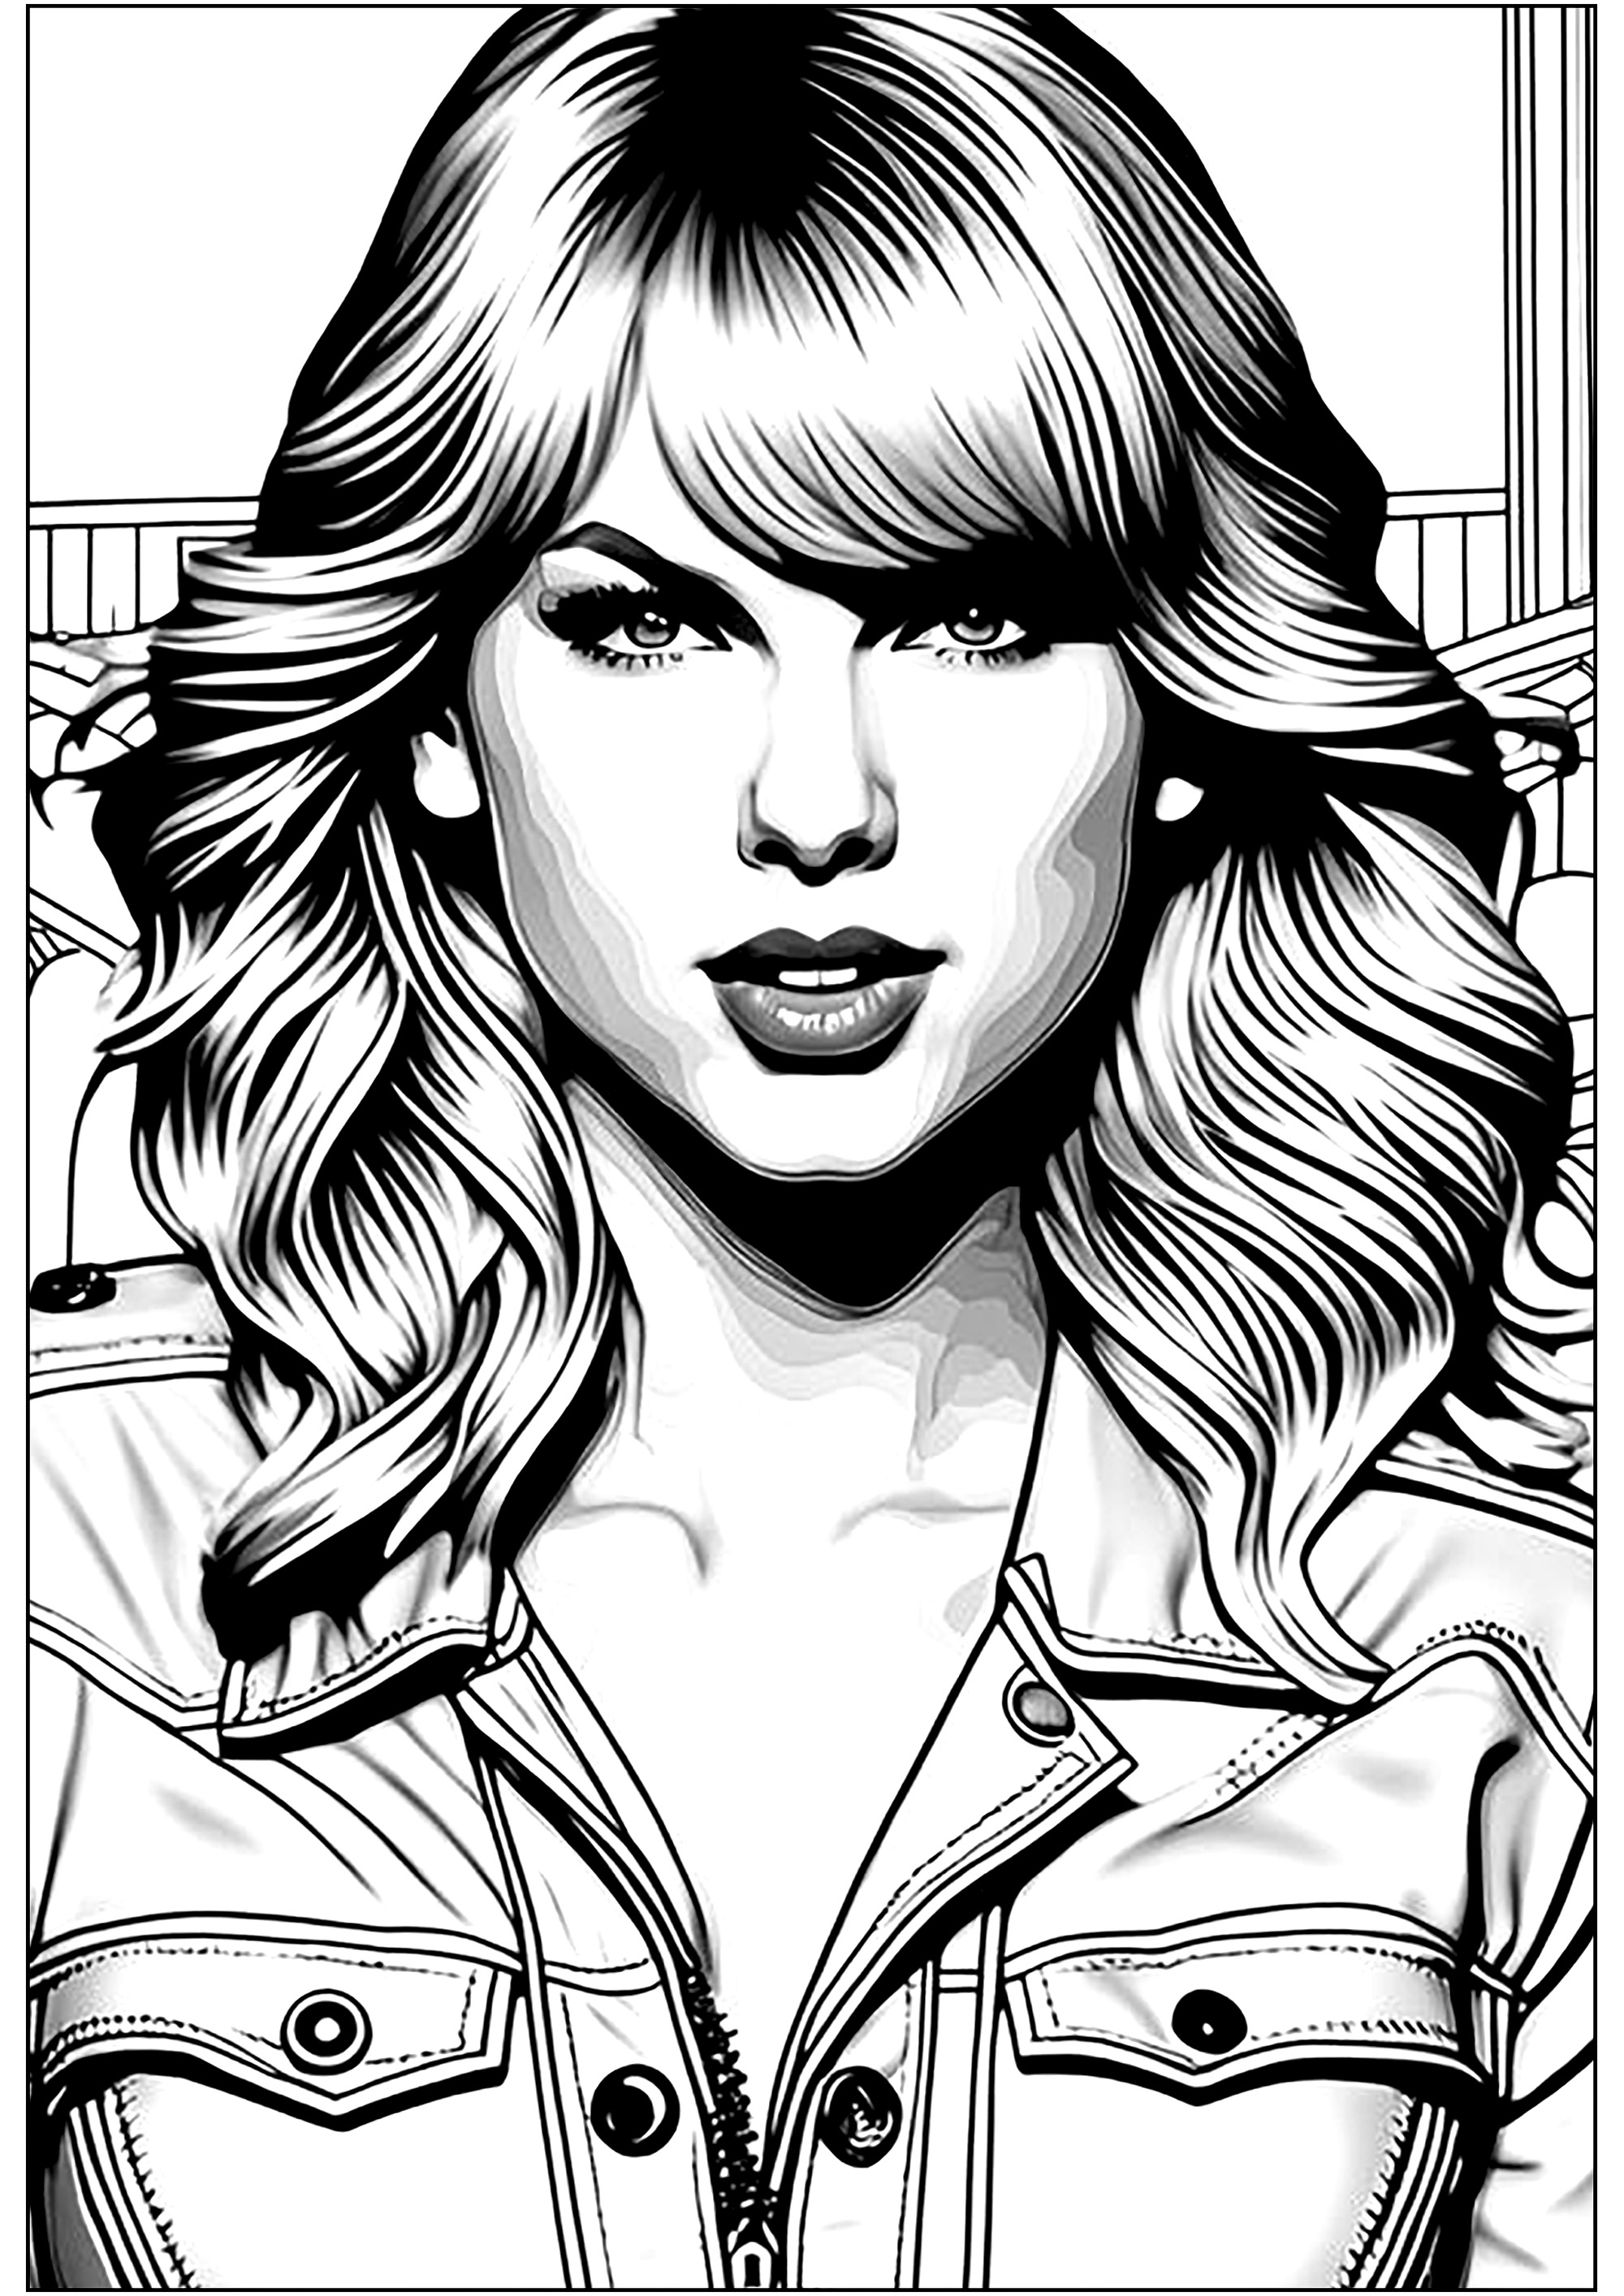 Taylor Swift à colorier. Taylor est à peine âgée de 17 ans lorsqu’elle débute à Nashville en 2006 sur le label Big Machine de Scott Borchetta. Elle sort alors son premier album, de style Country, sur lequel elle écrit quasi toutes les chansons.